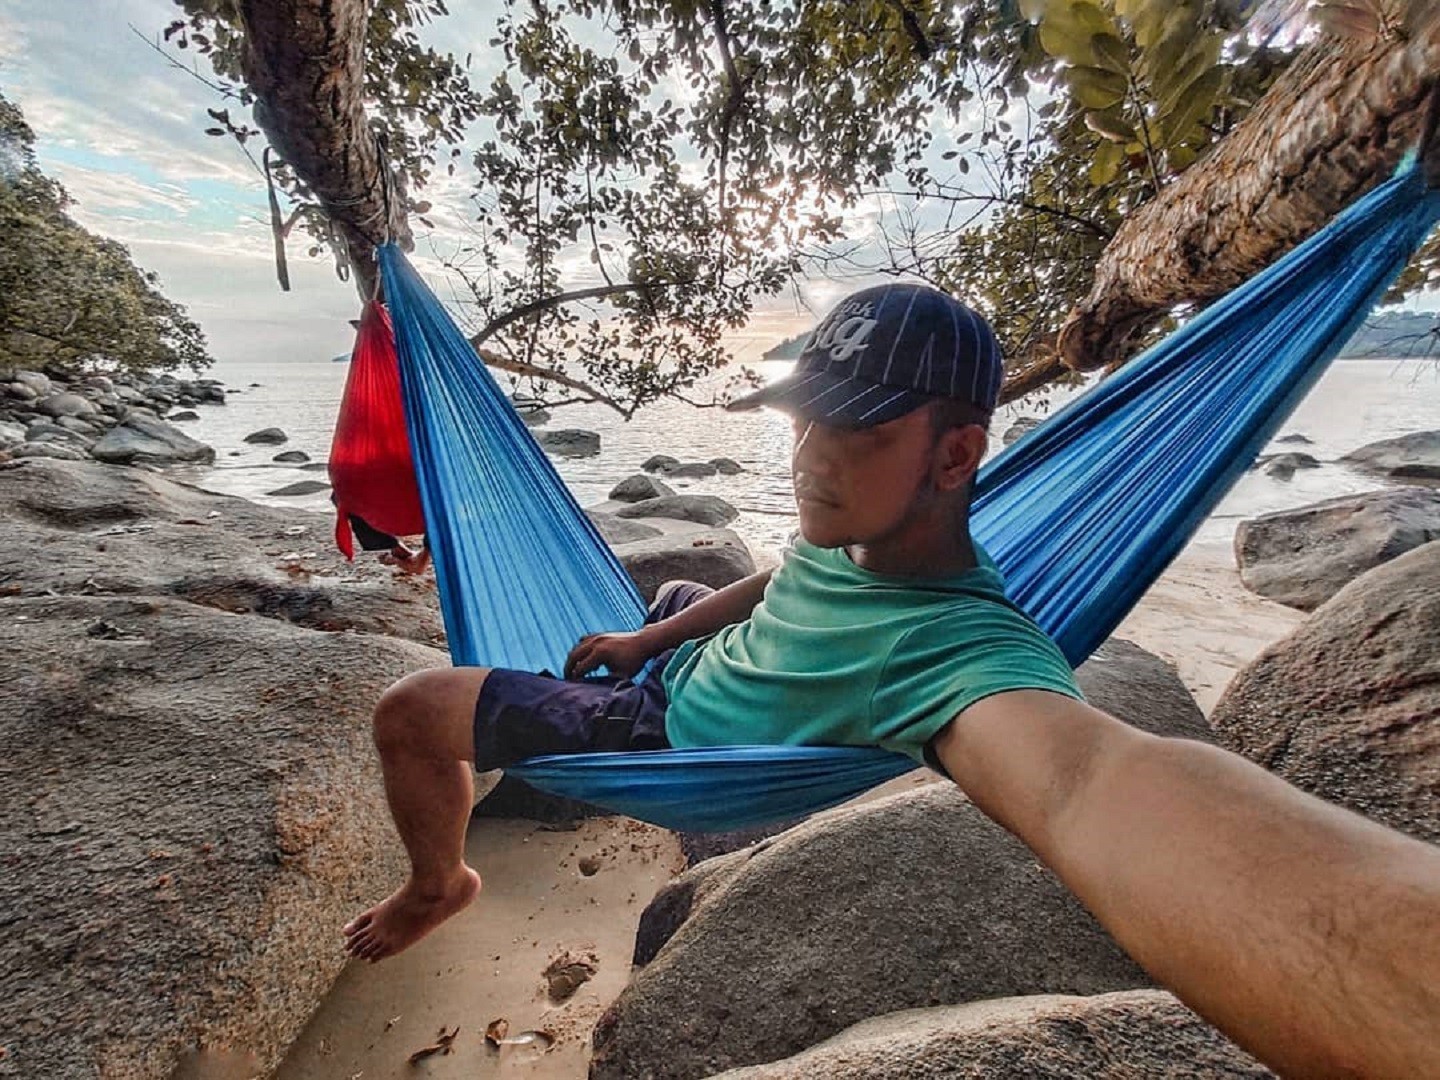 Bersantai di atas hammock di tepi Pantai